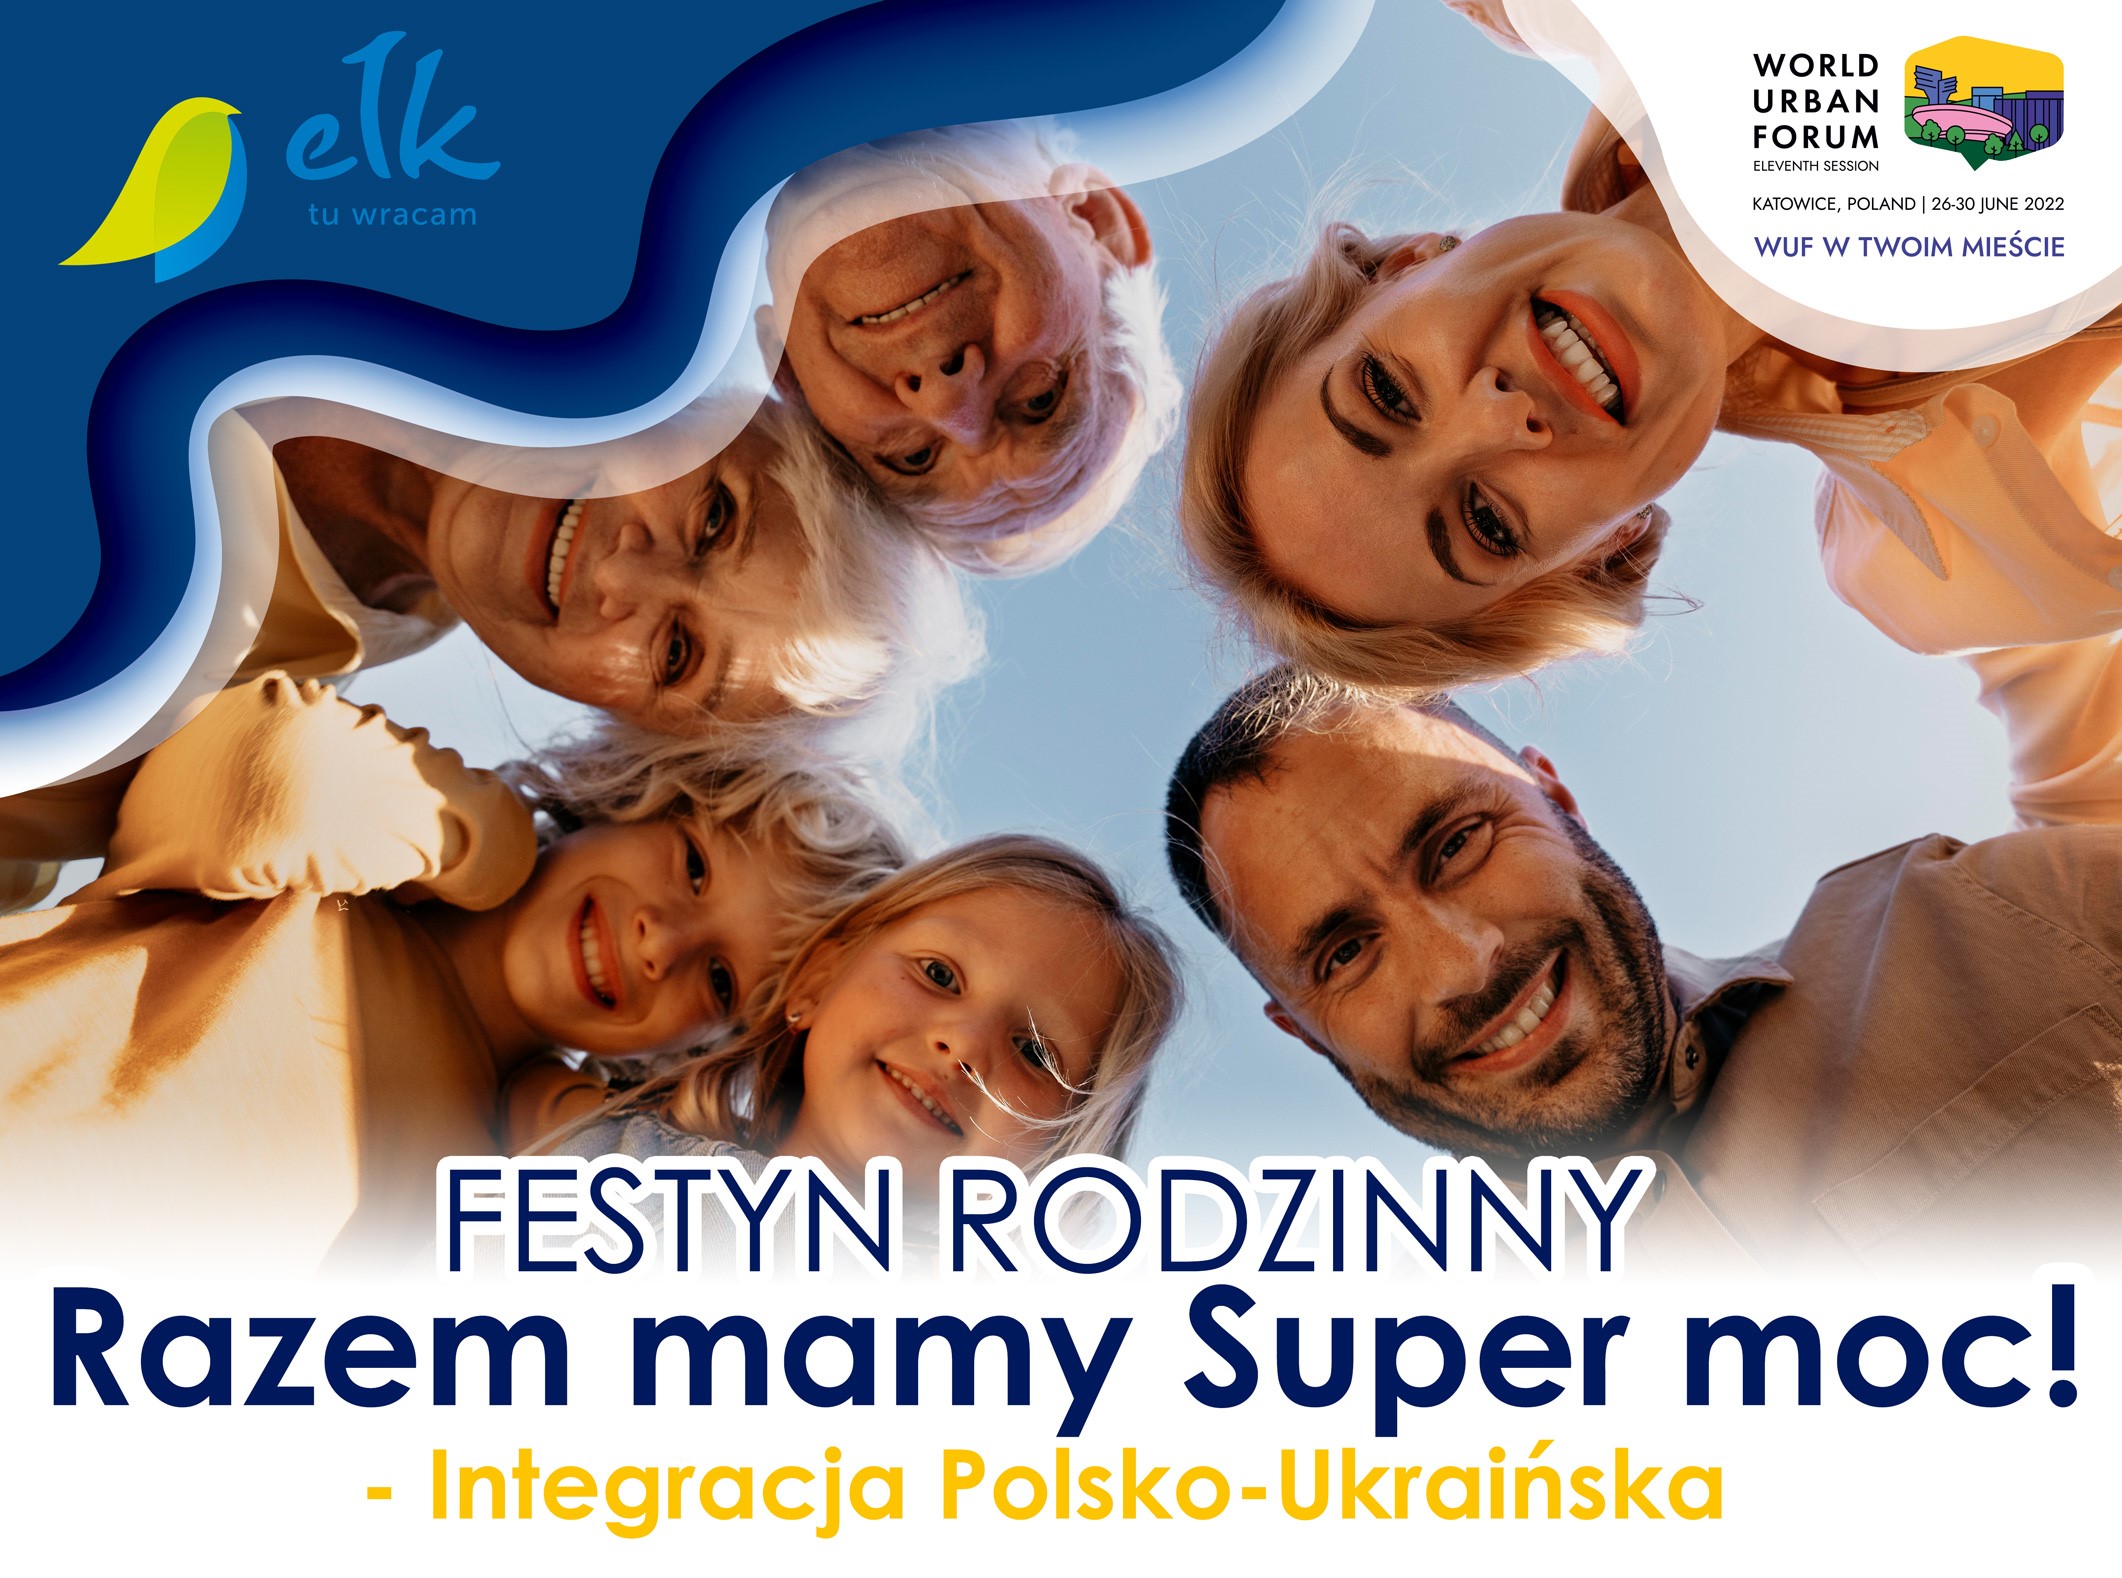 Festa della Famiglia Integrazione Polacco-Ucraina